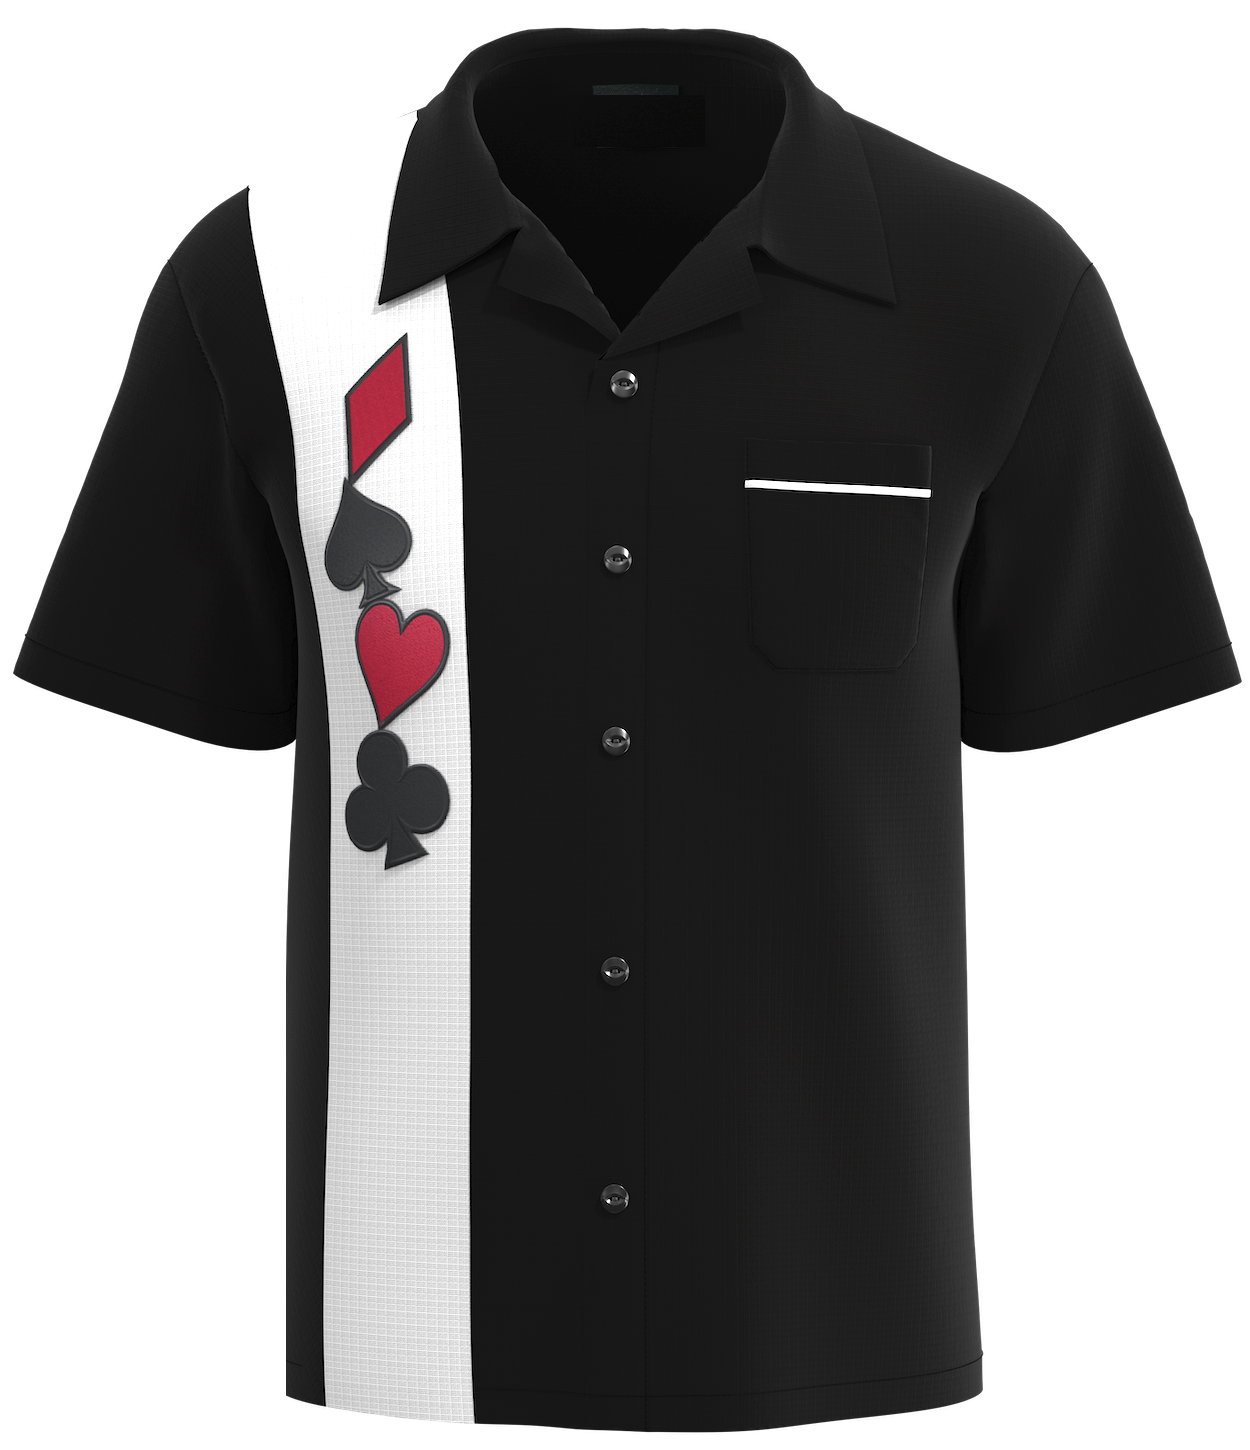 Card Suit Poker Bowling Shirt | Casino Shirt